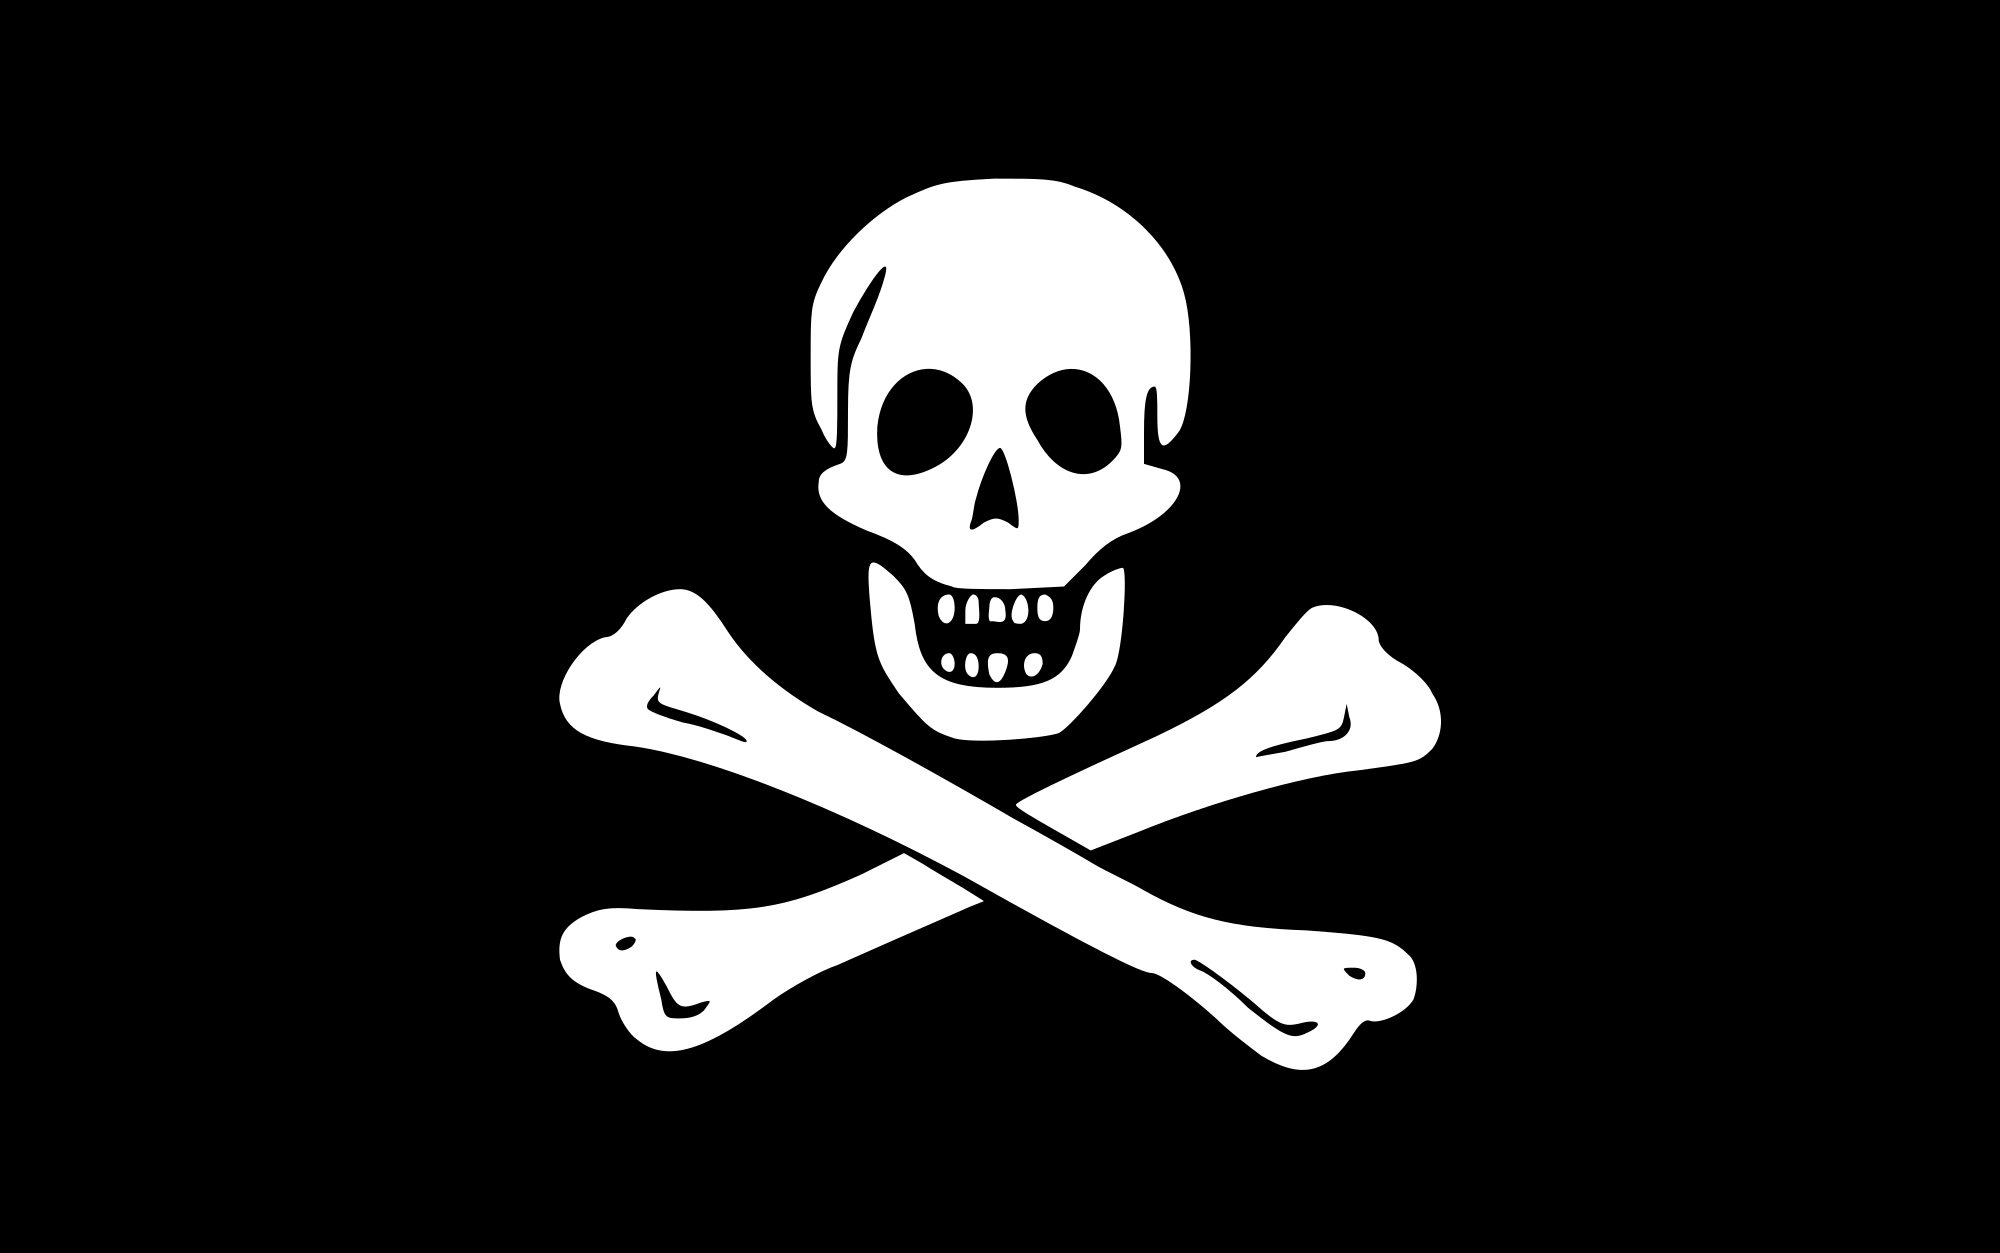 Um software pirata pode implicar em diferentes problemas para a sua empresa.